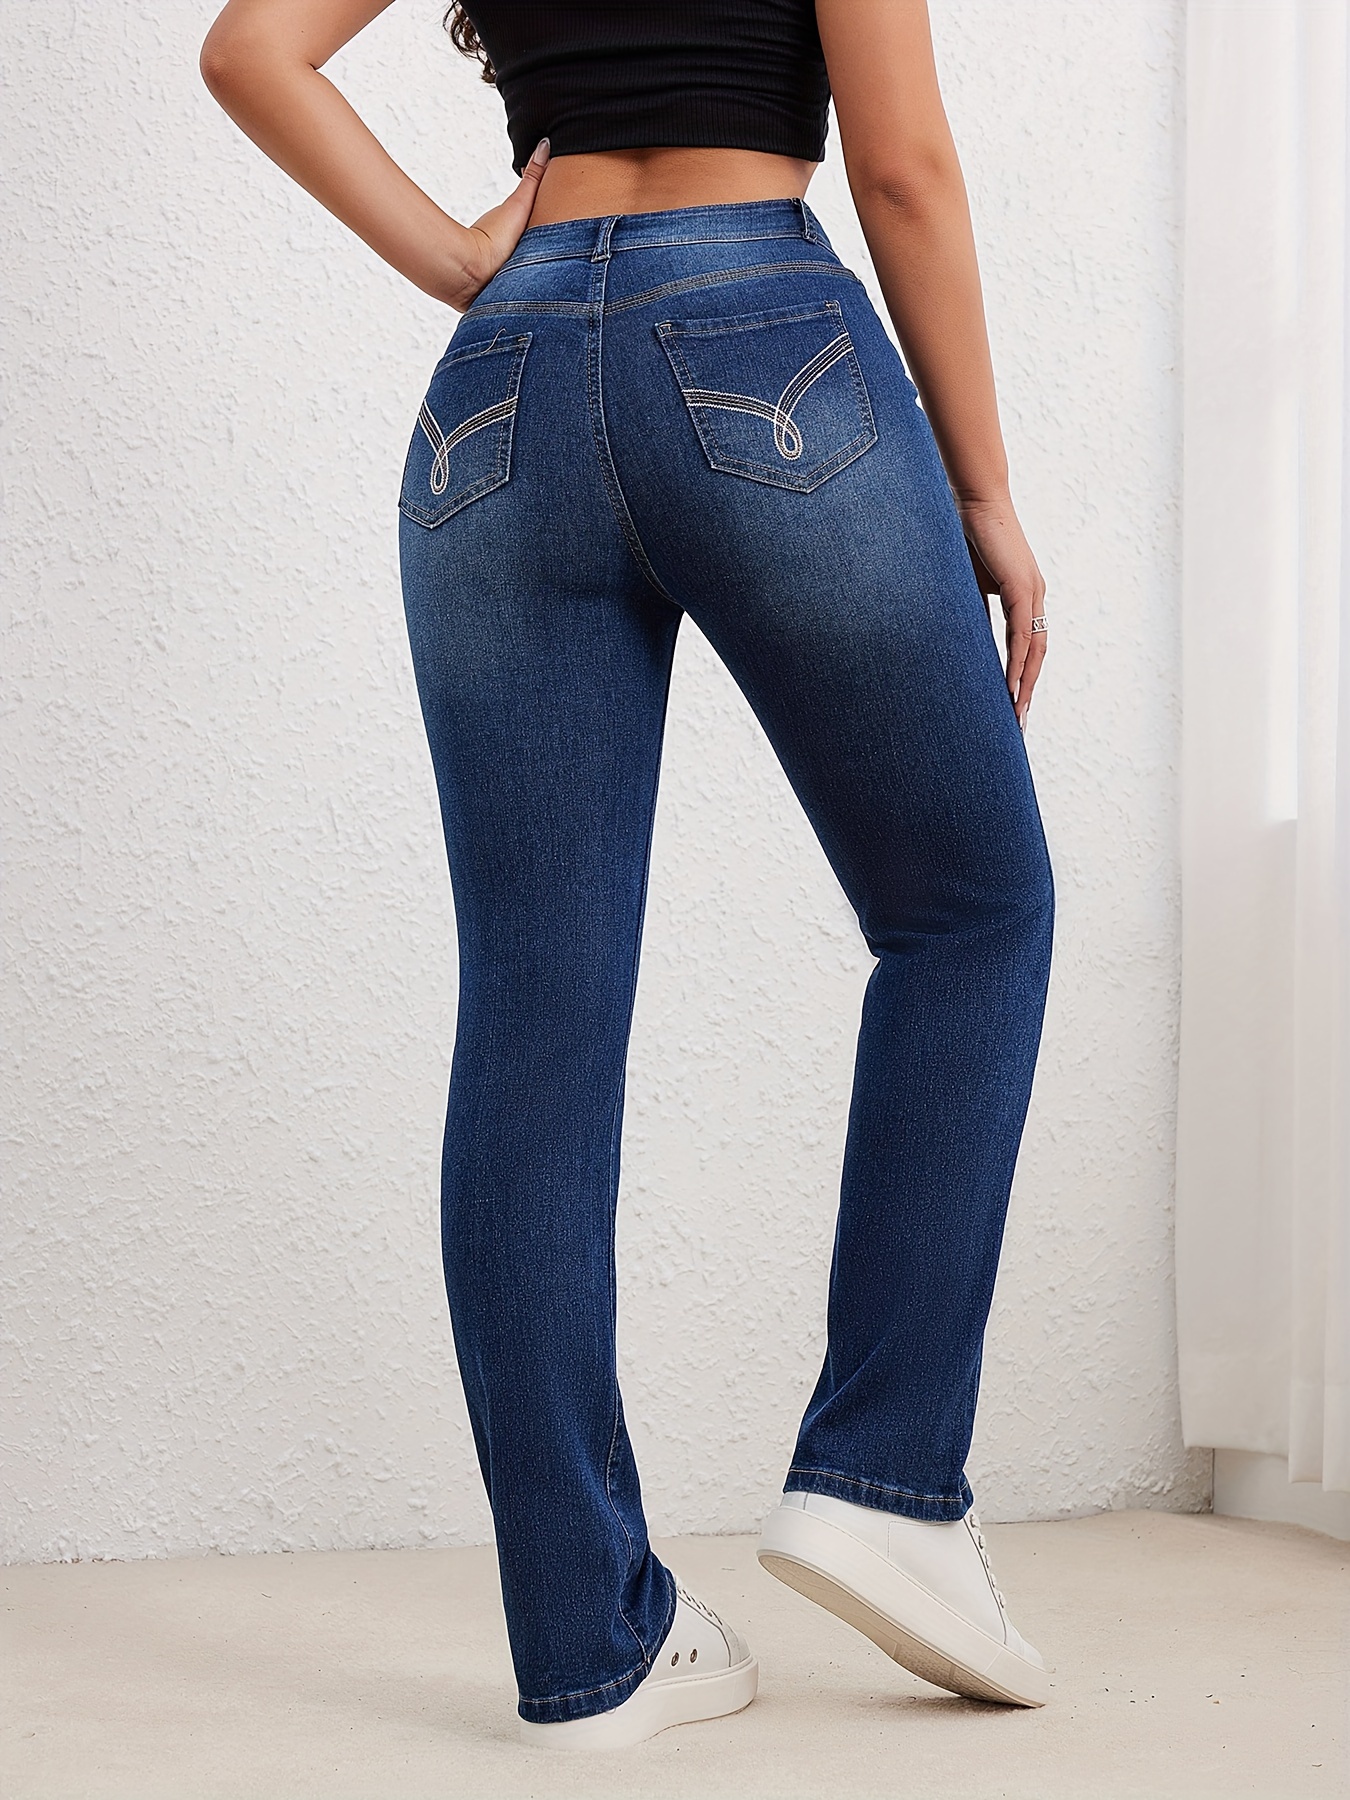 Nueva calidad vintage de cintura alta Stretch Skinny Jeans, pantalones lápiz  de botón elástico de moda para mujeres, pantalones vaqueros casuales para  mamá